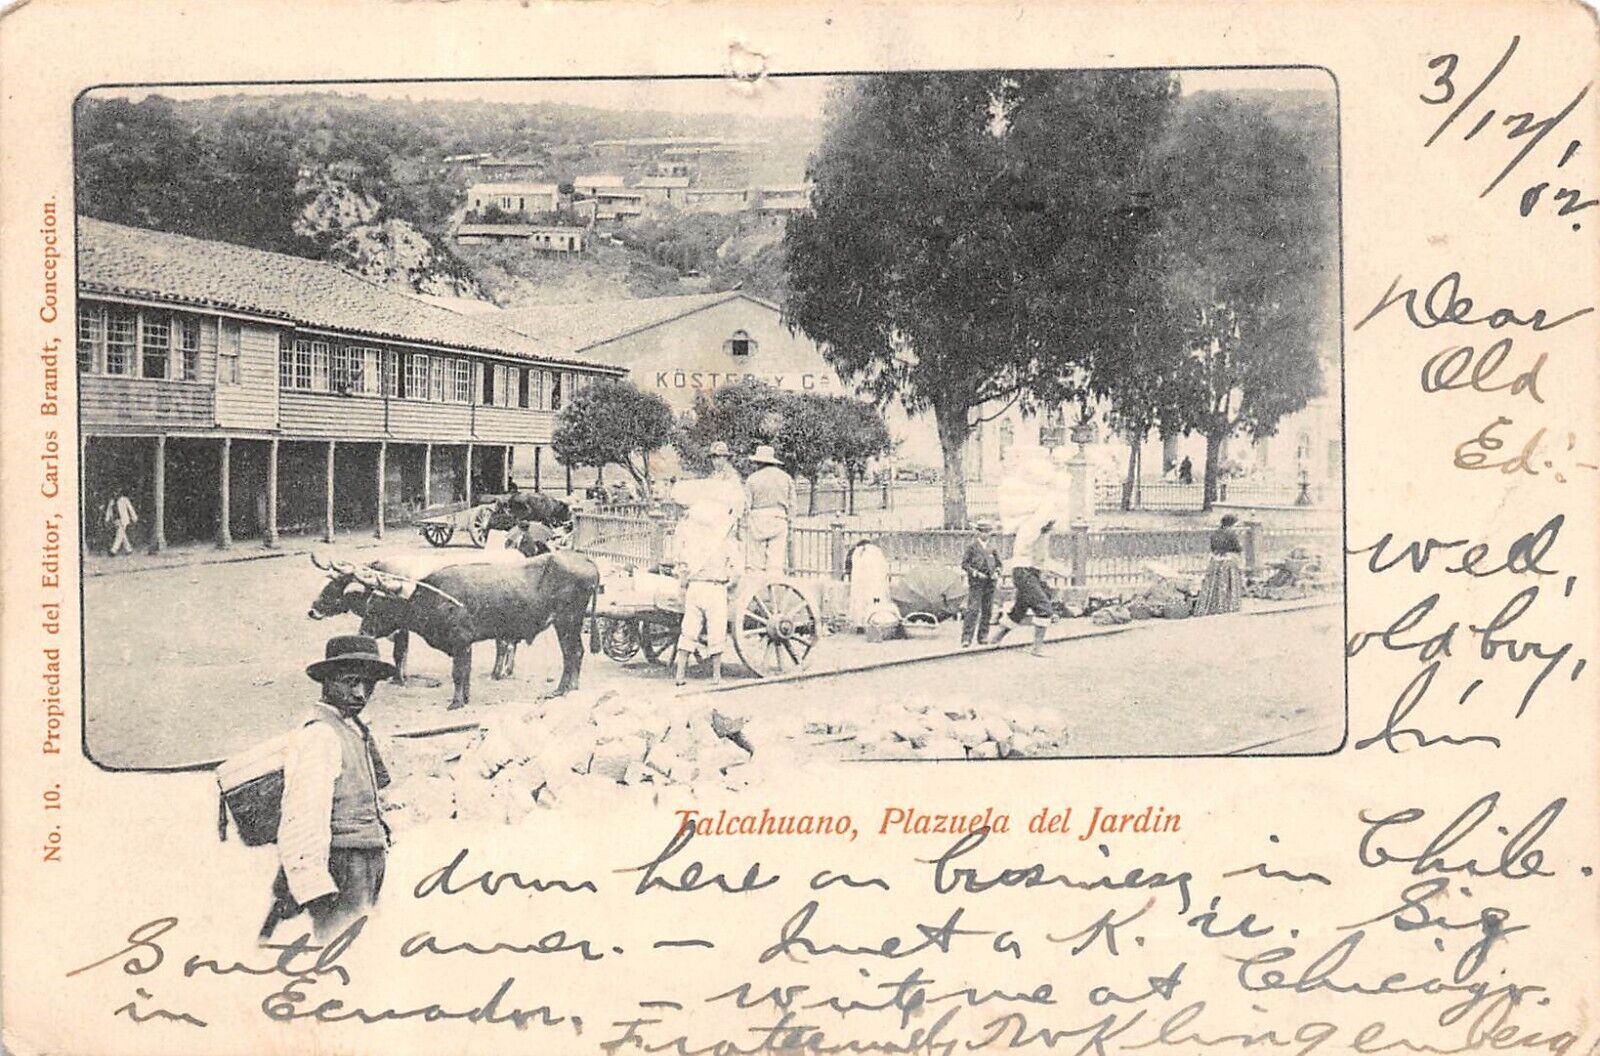 CHILE Talcahuano Plazuel del Jardin Town View Ox Cart 1902 UDB Postcard